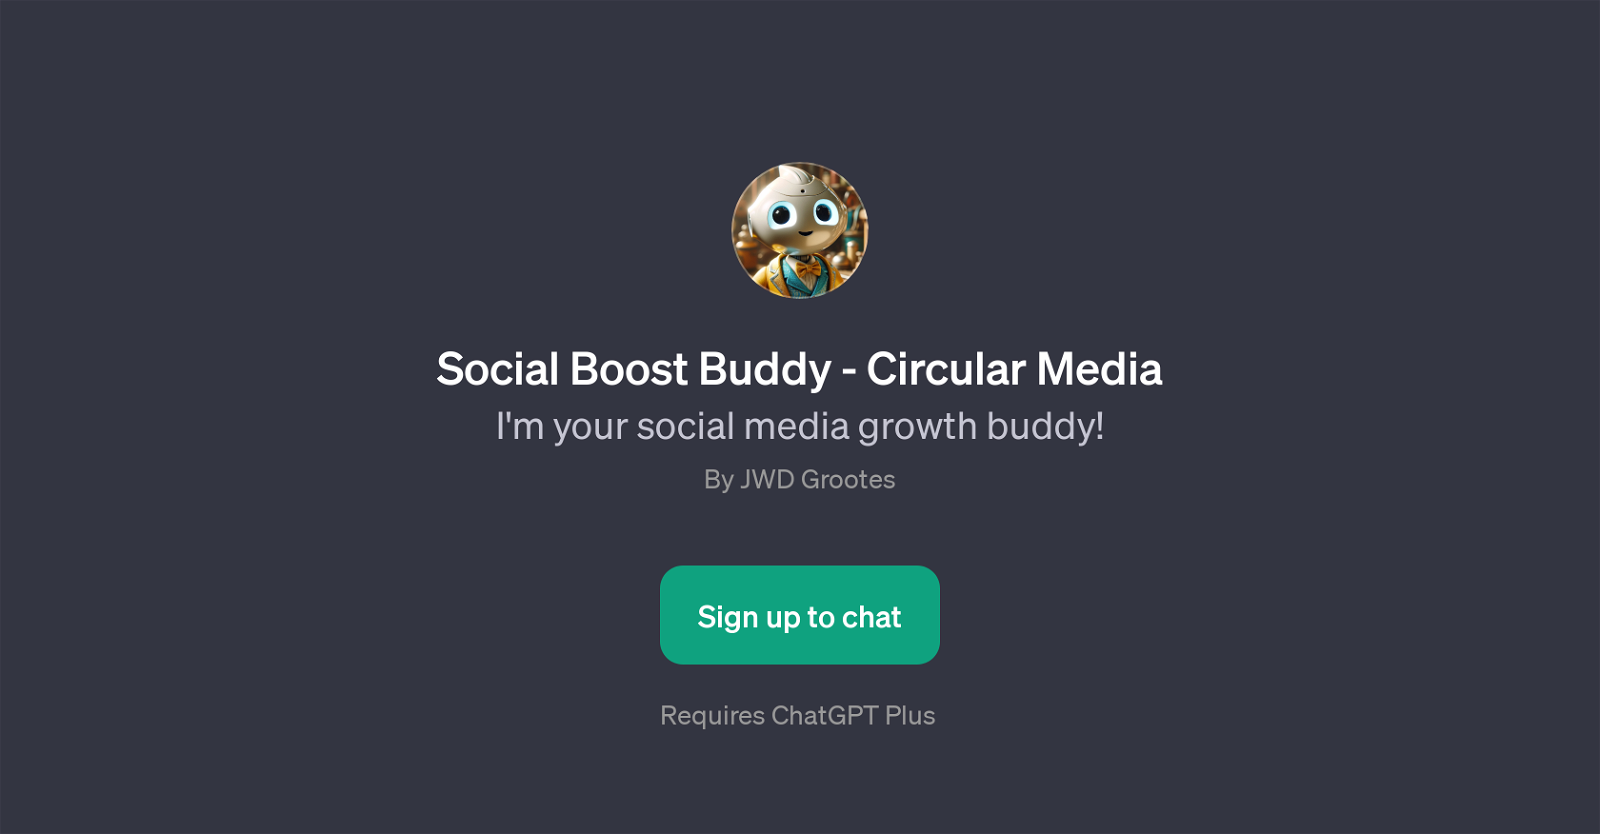 Social Boost Buddy - Circular Media website